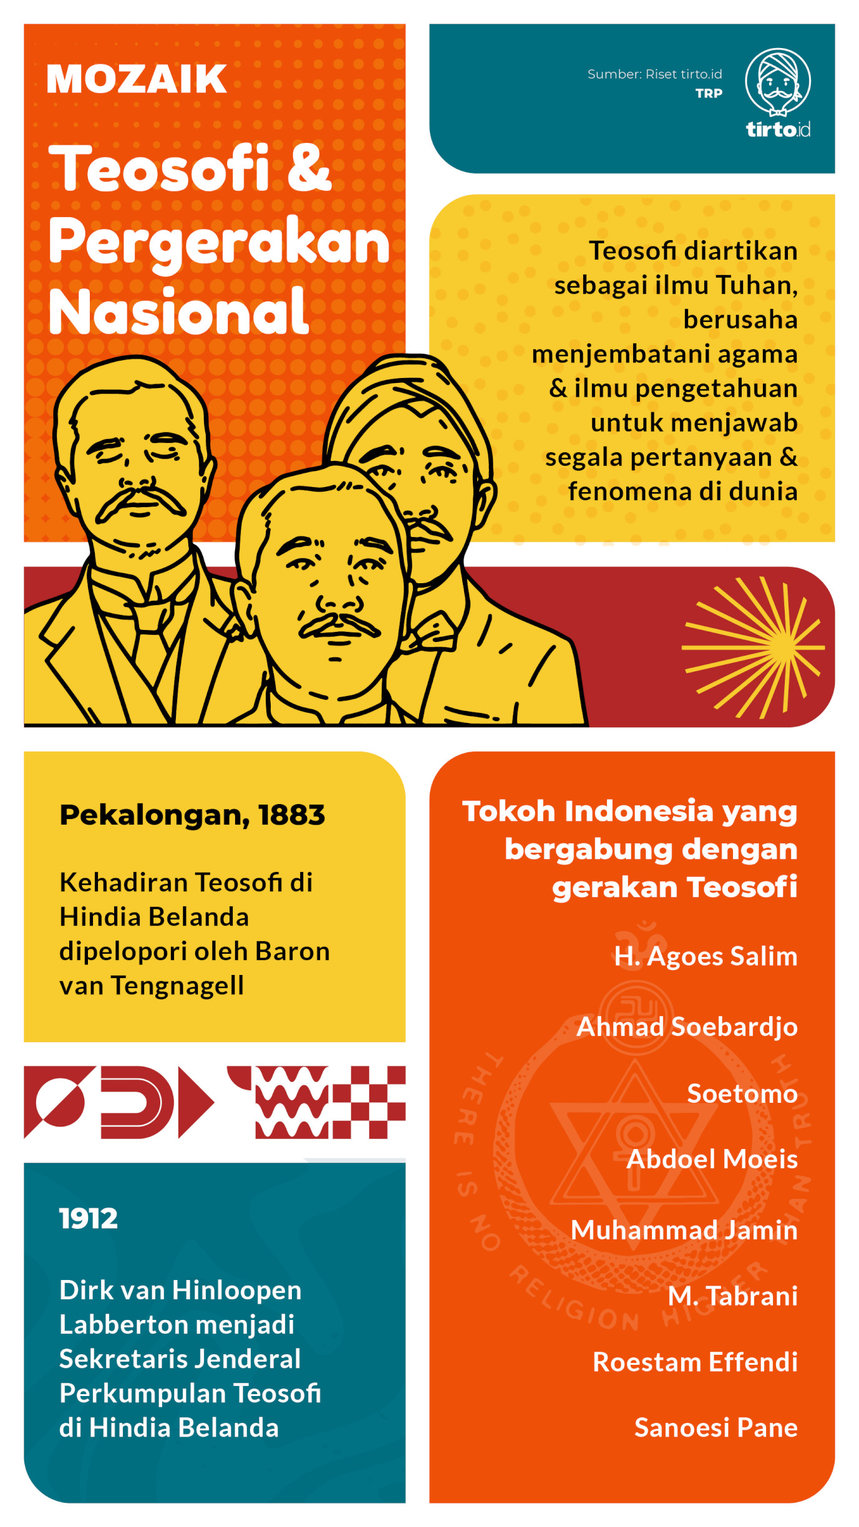 Infografik Mozaik Teosofi dan Pergerakan Nasional